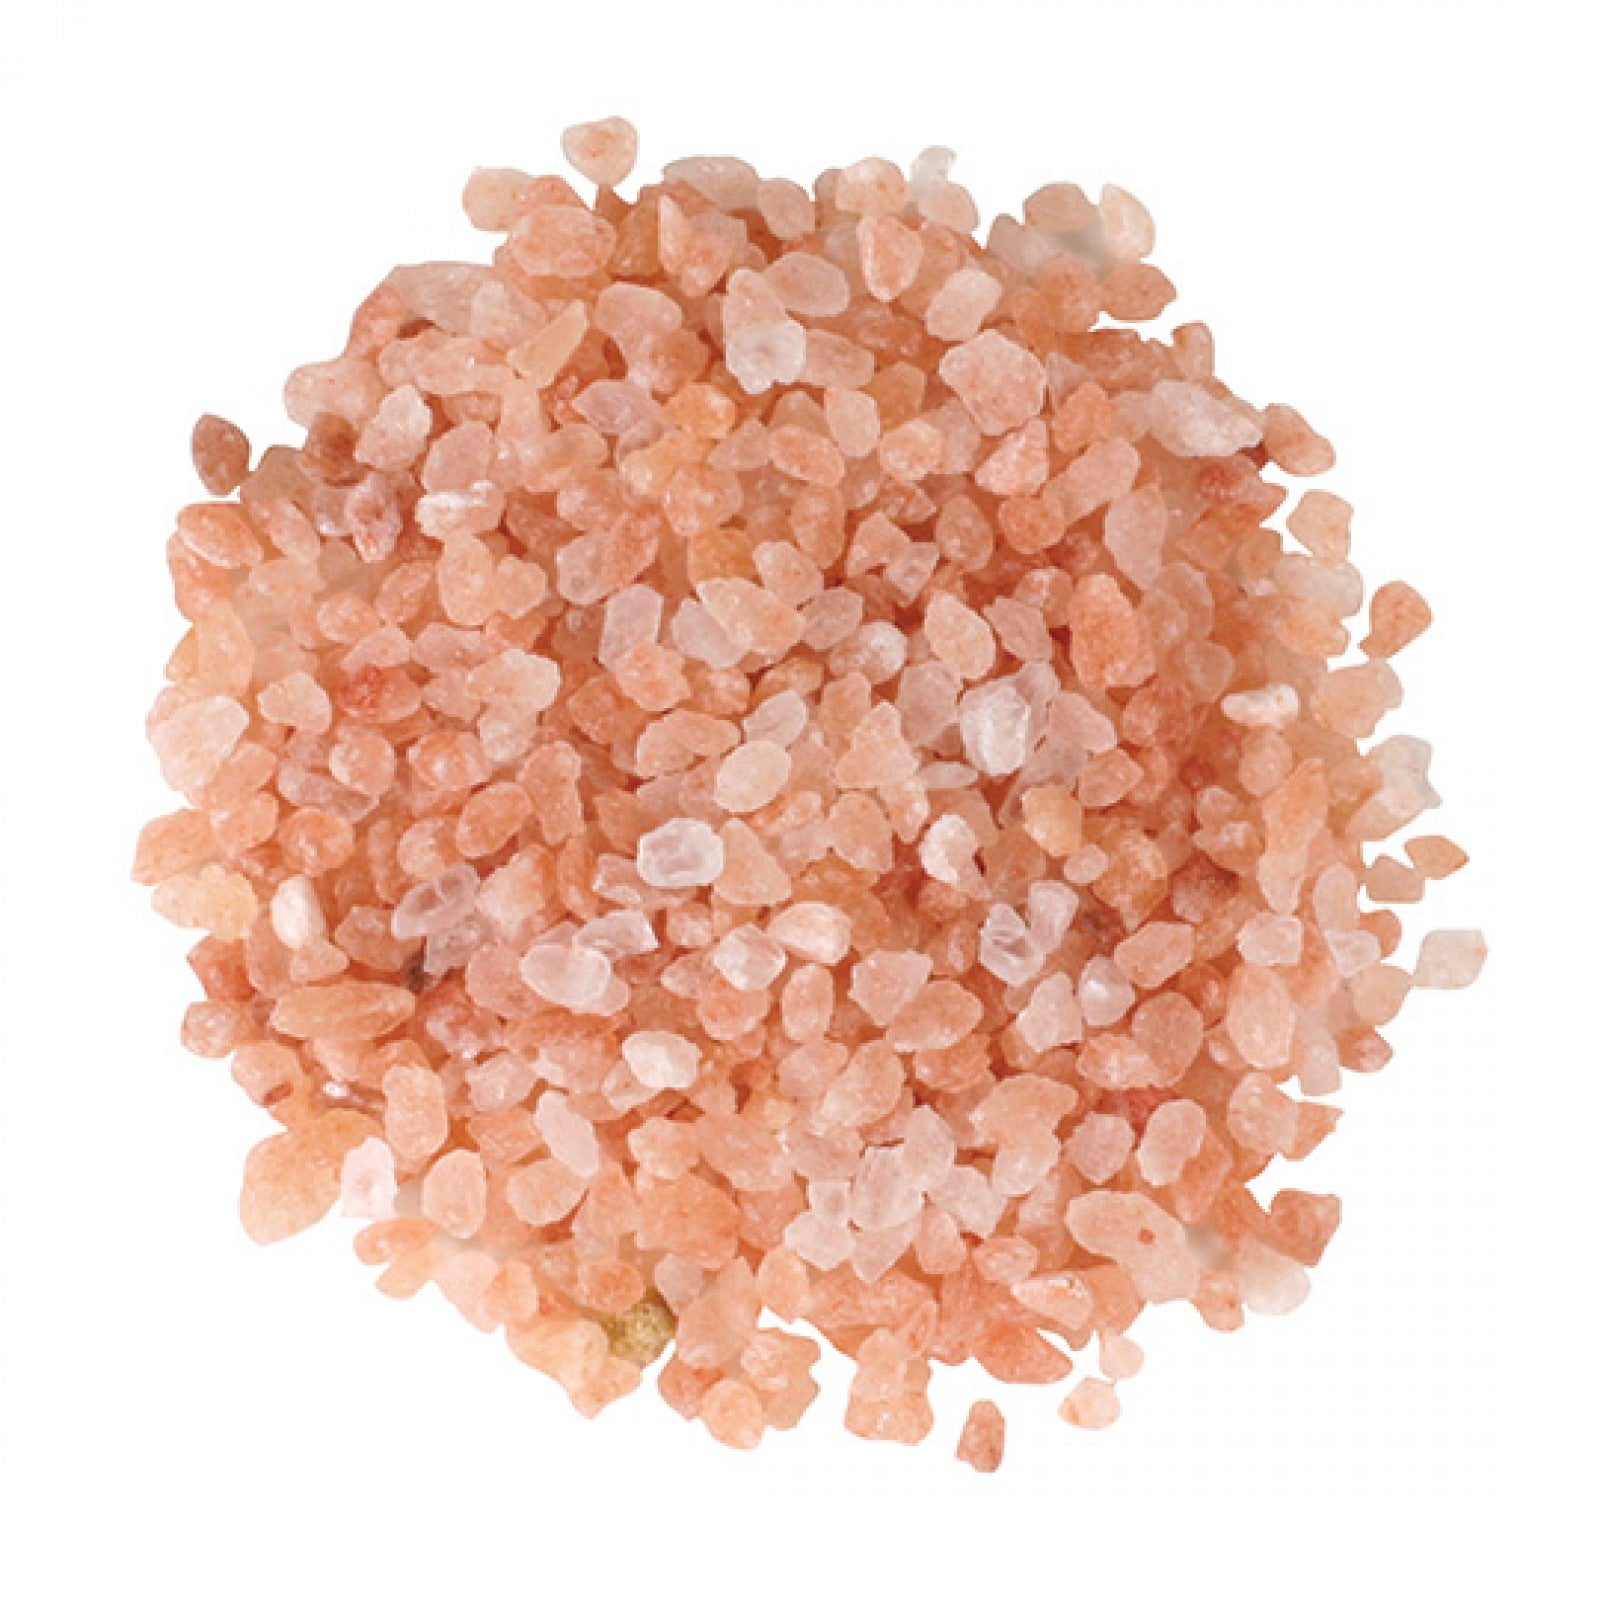 Jacobsen Salt Co - Pink Himalayan Loaded Grinder Delivery & Pickup